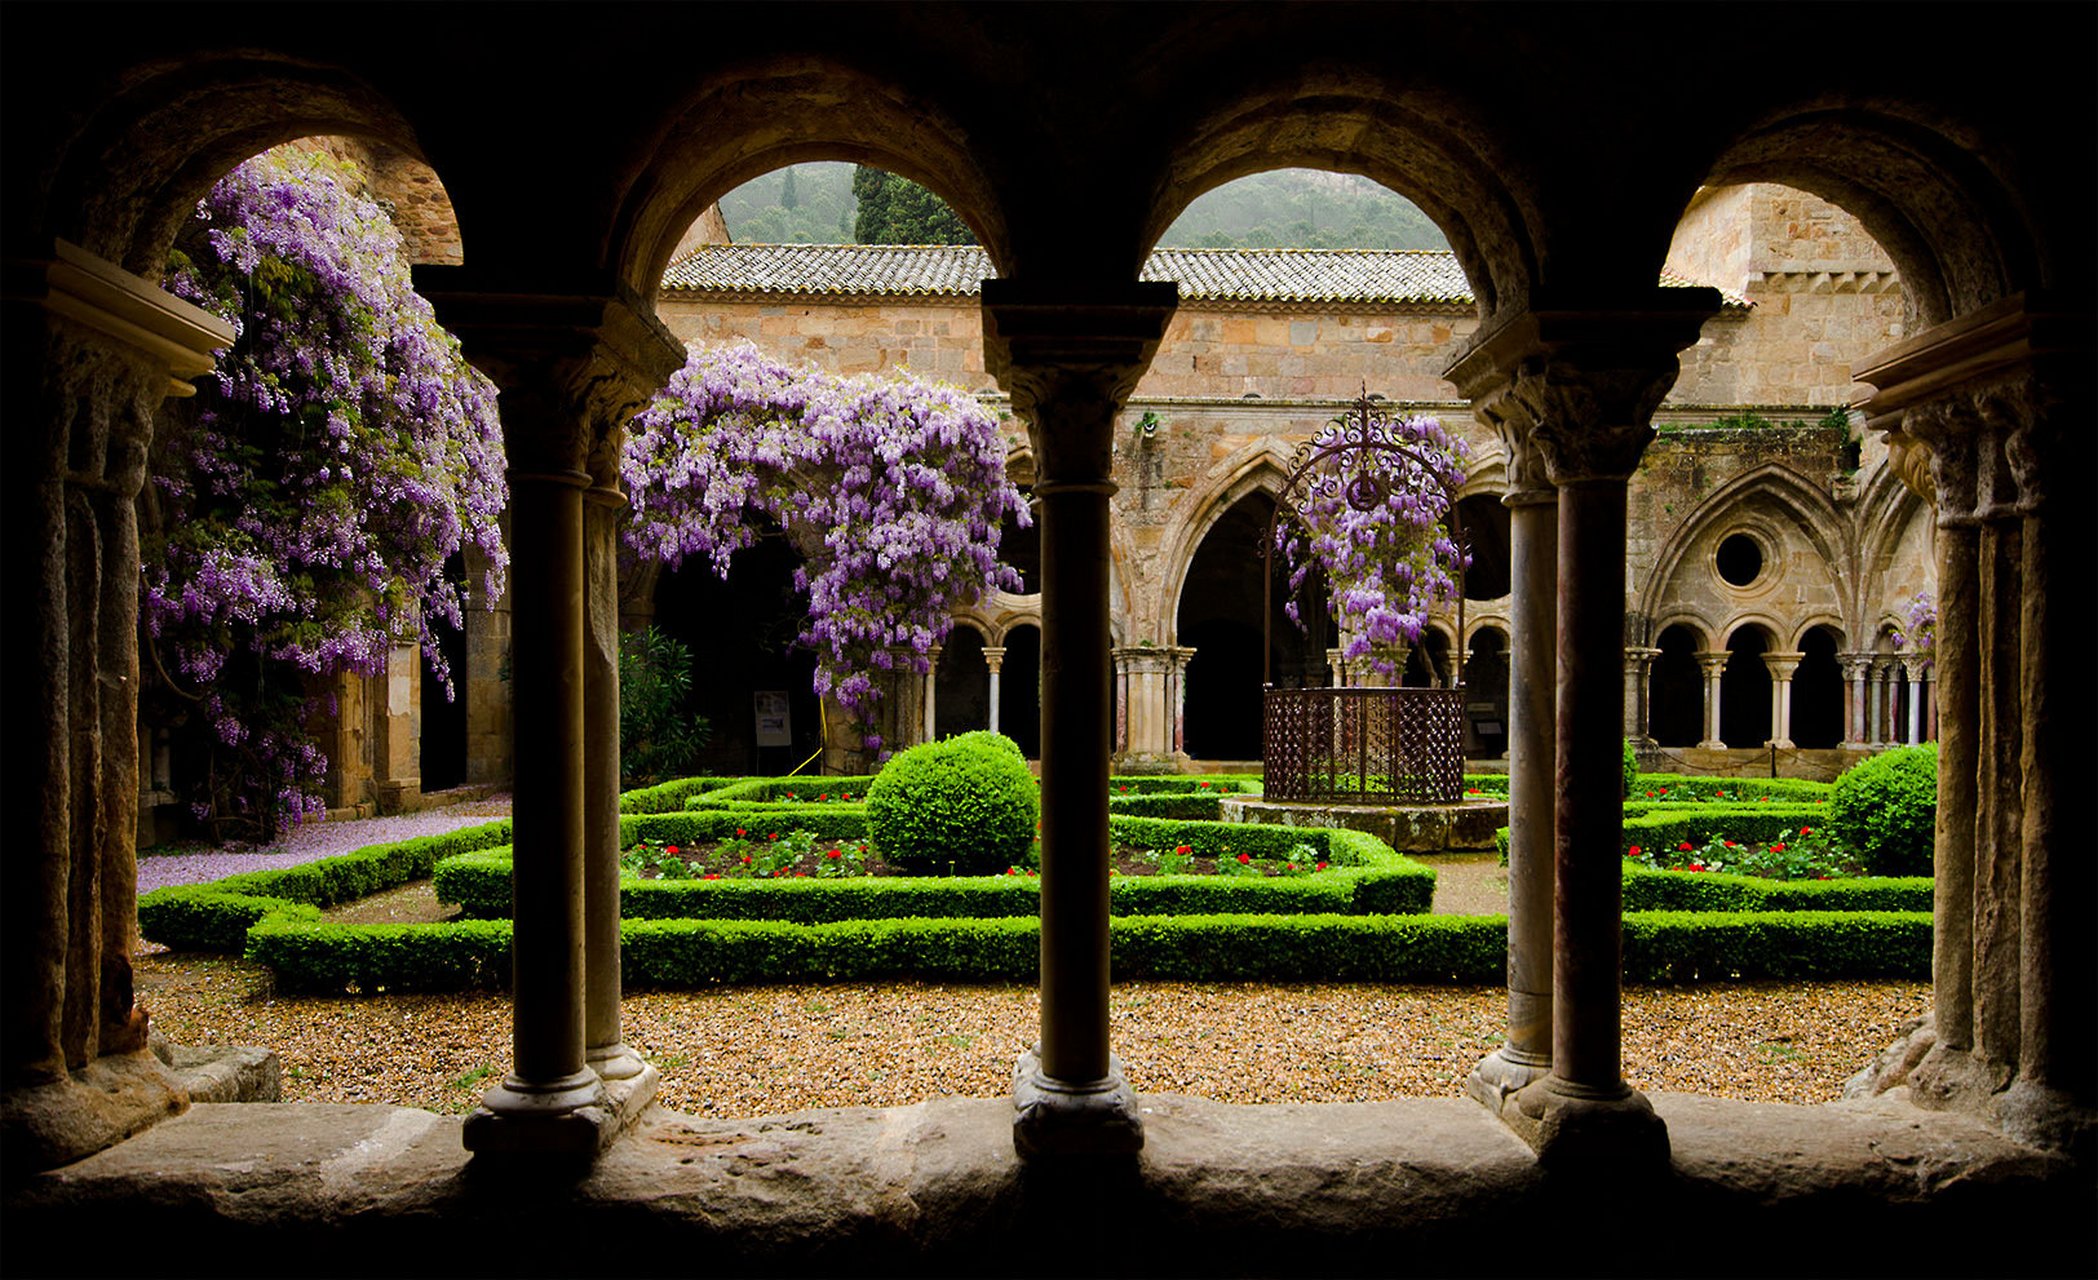 中世纪的修道院花园,修道院是专门为修道众提供居住,文化和宗教生活的